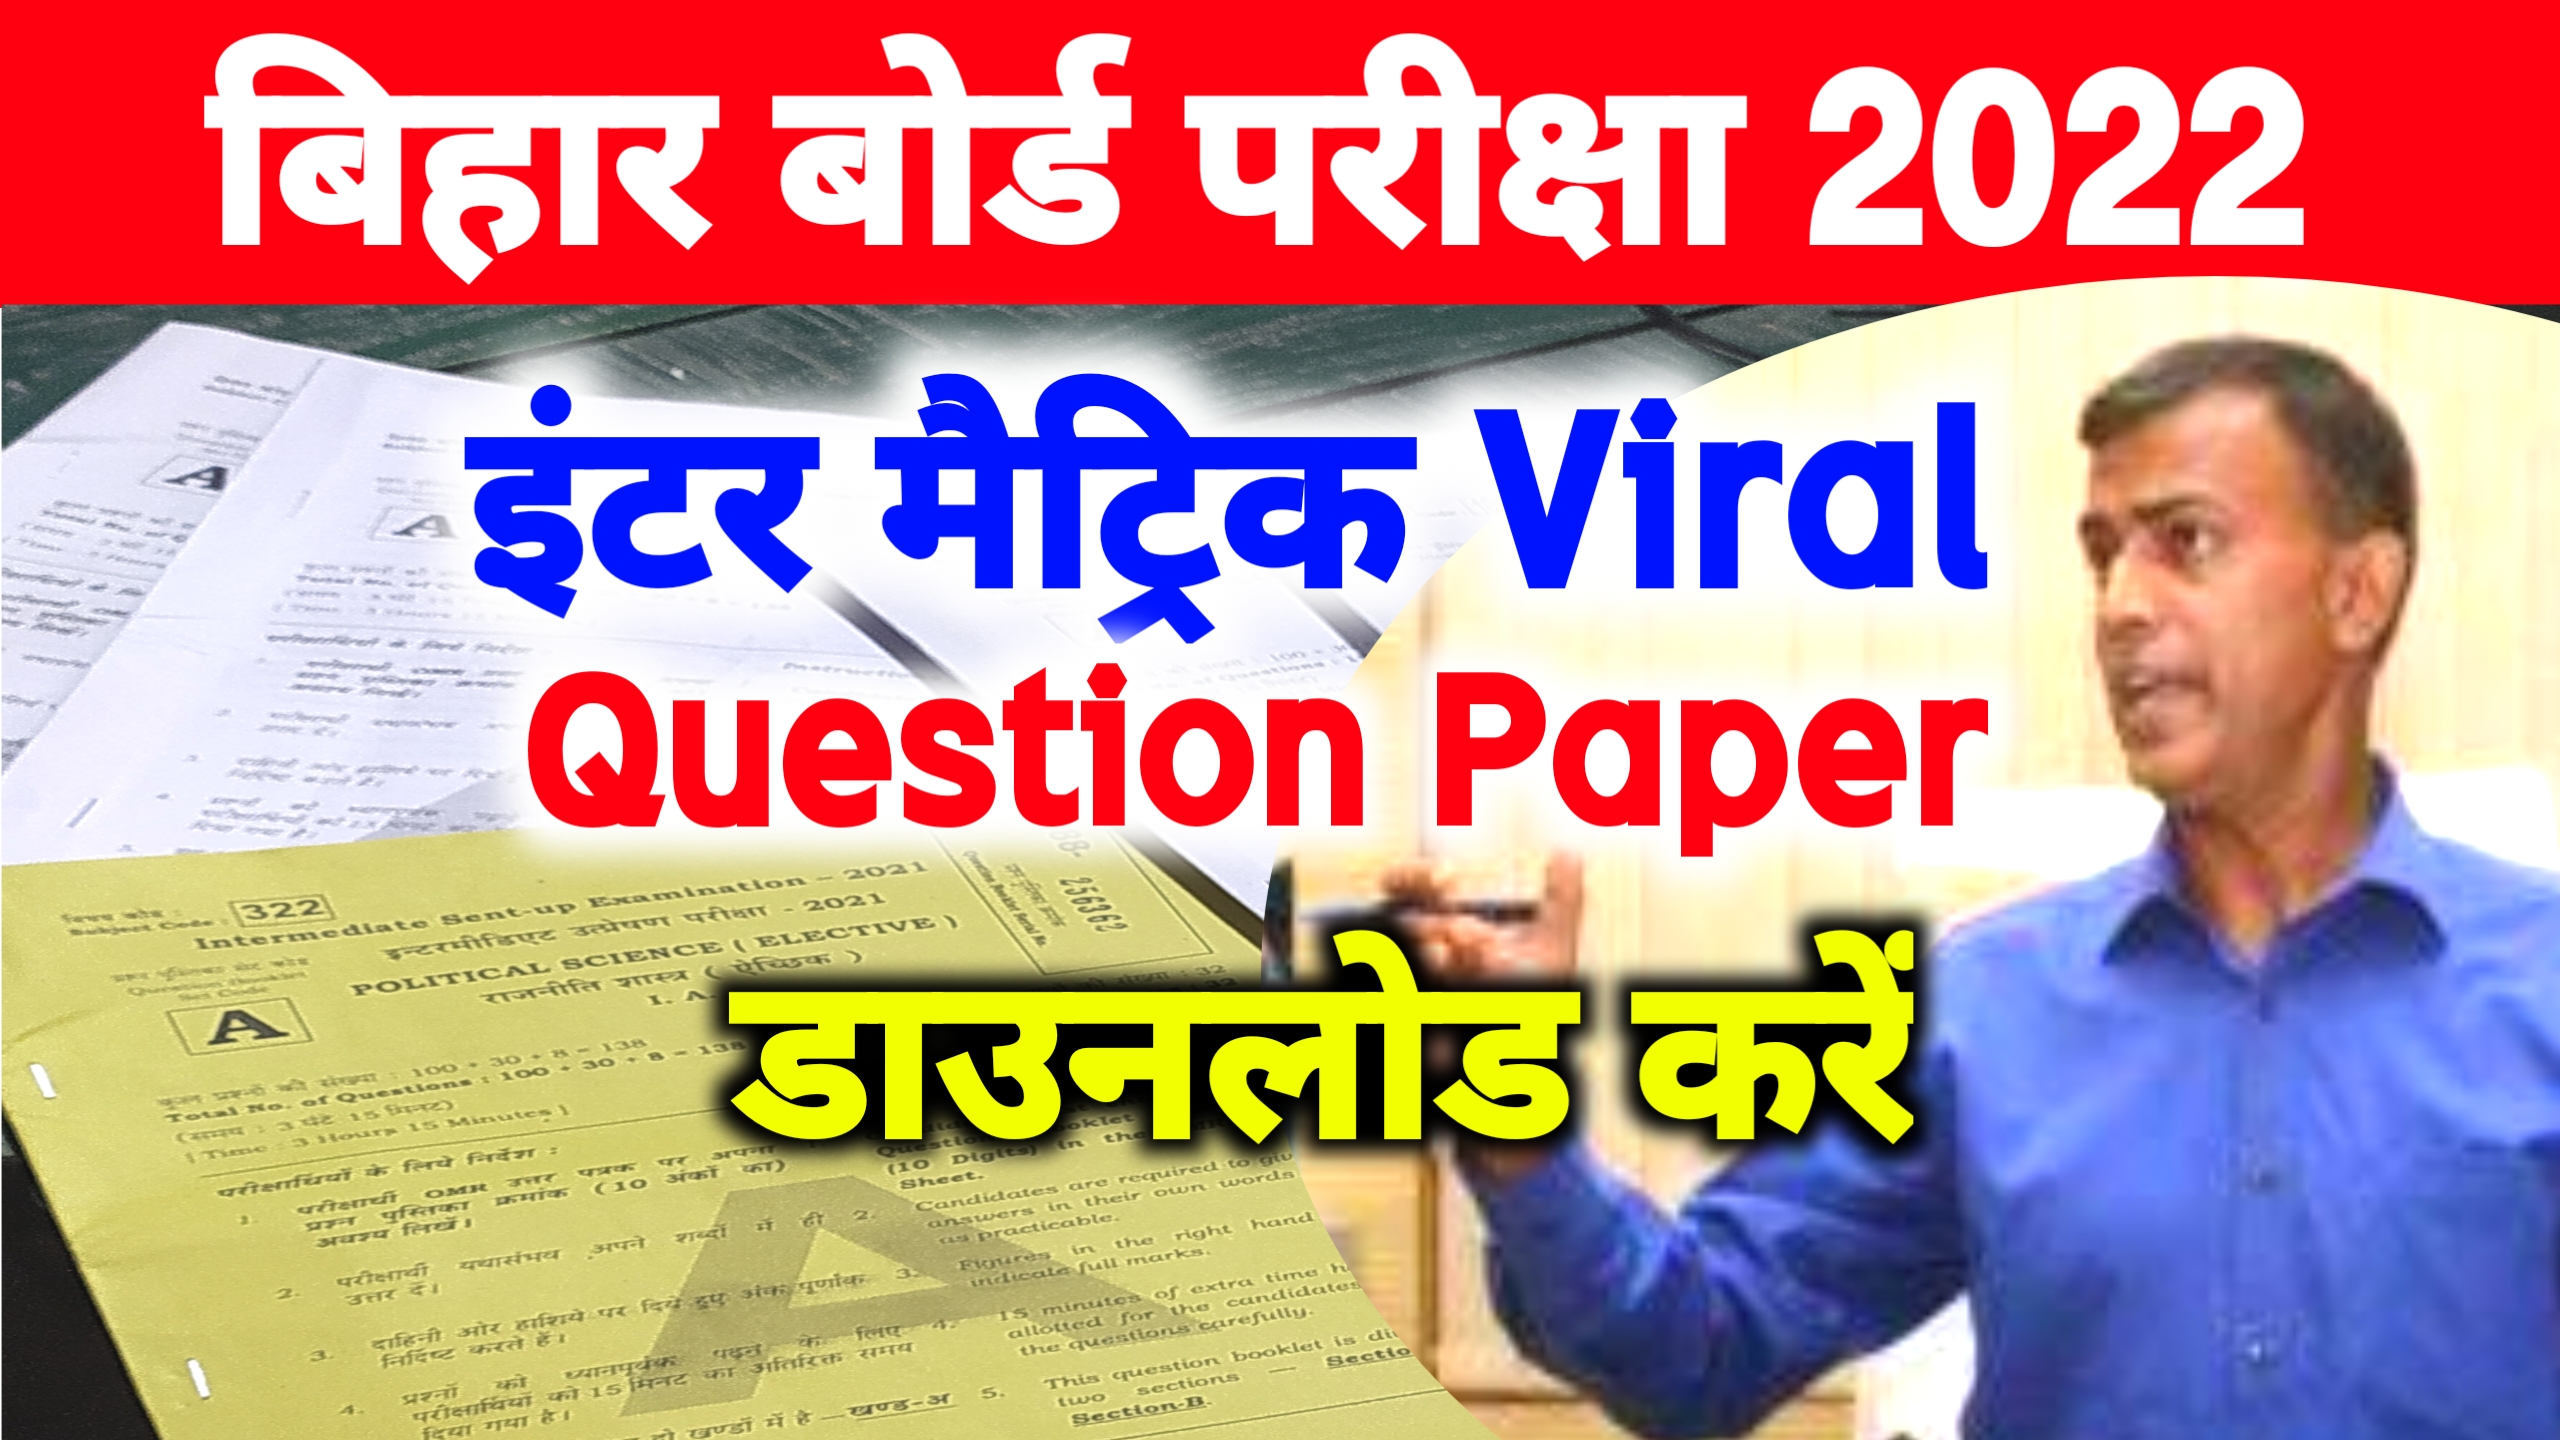 Bihar Board Question Paper 2022 Download Link ; मैट्रिक इंटर प्रश्न पत्र यहां से डाउनलोड करें!